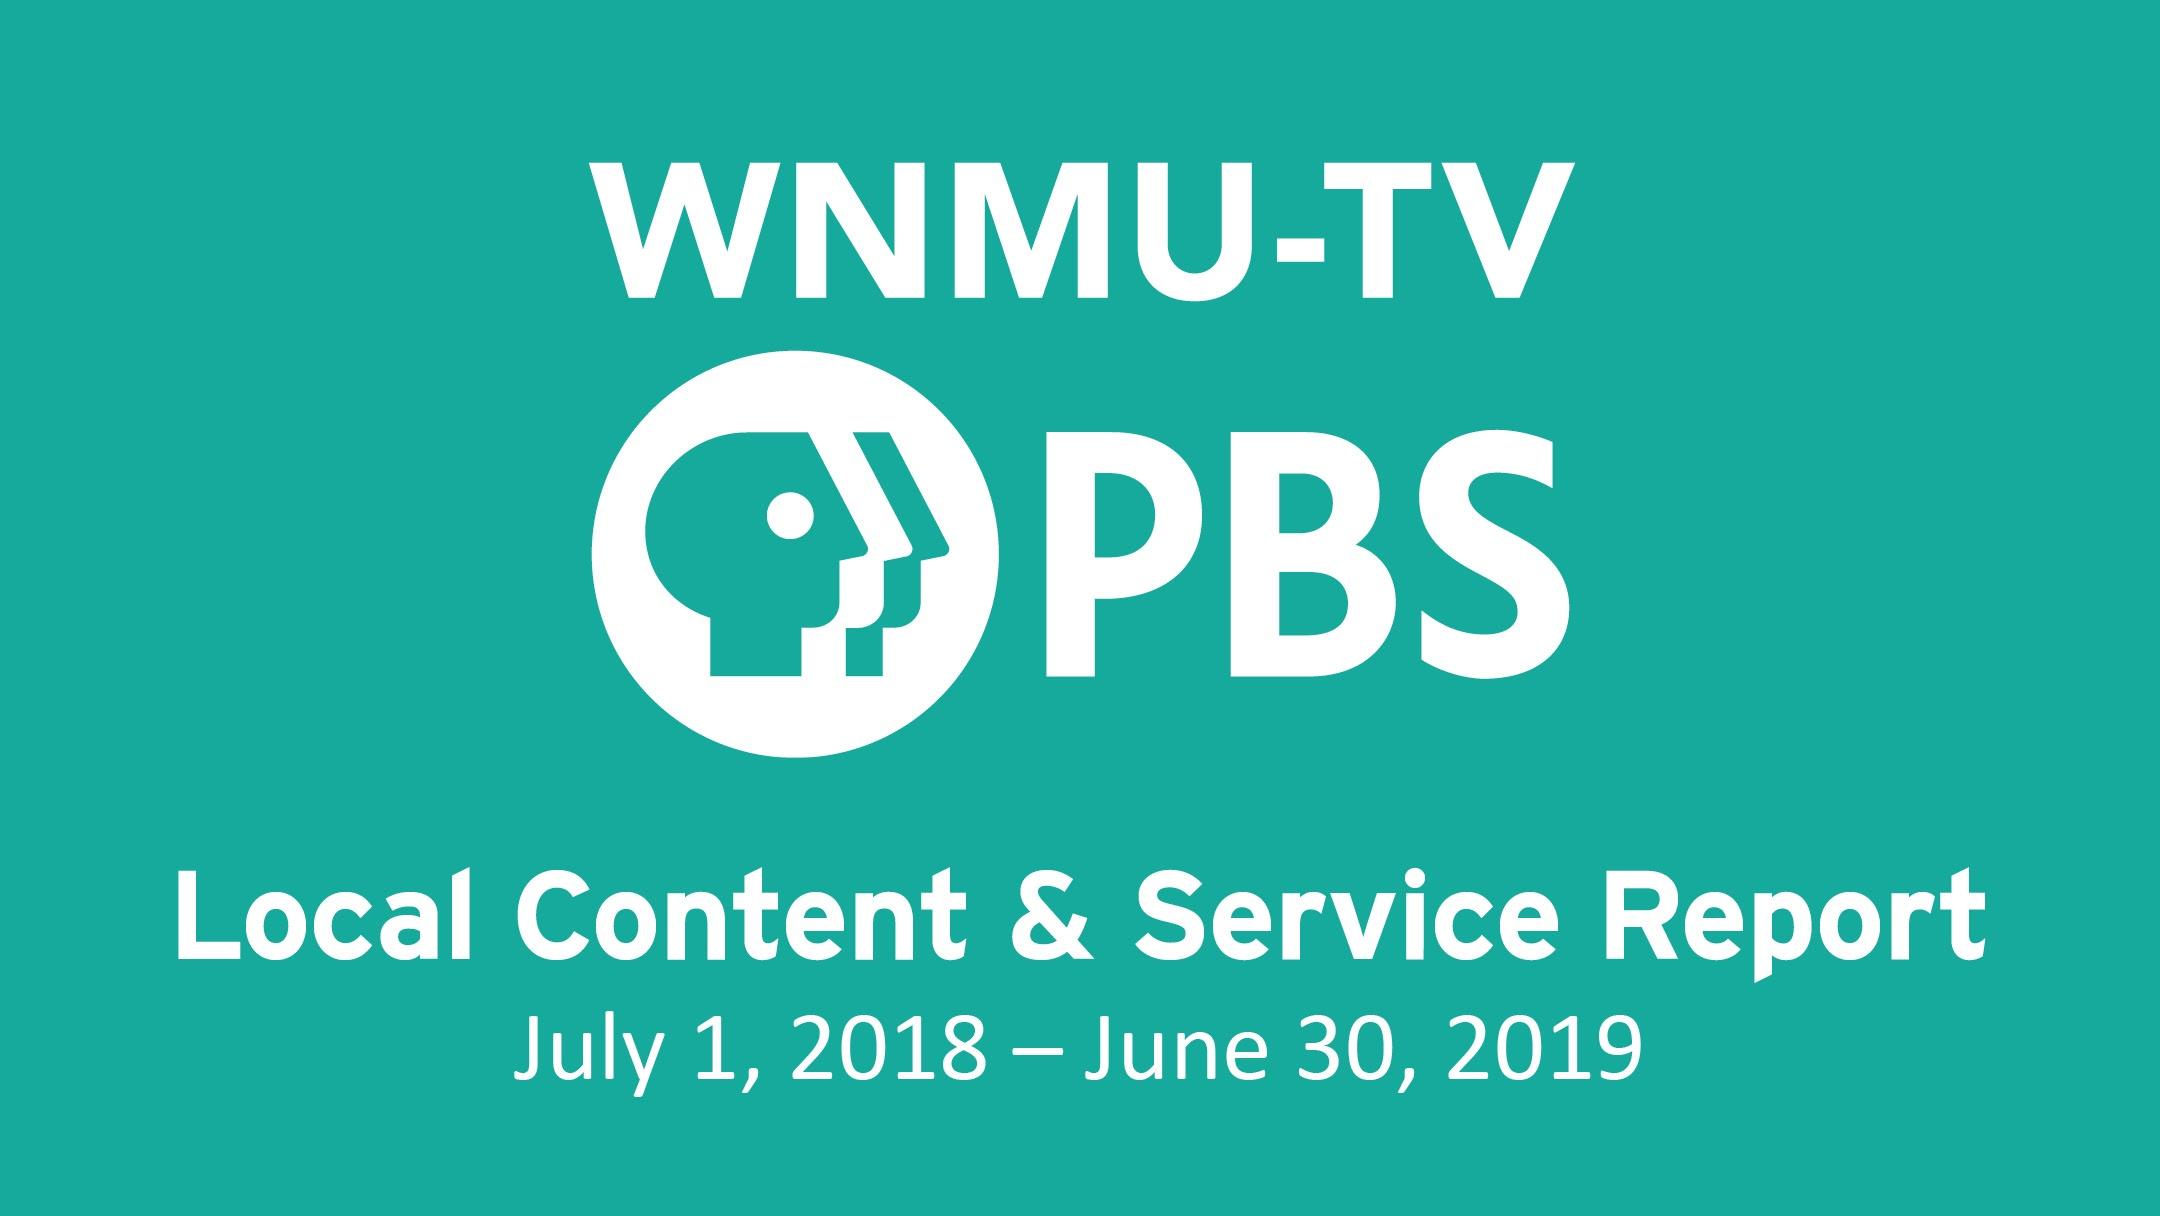 WNMU-TV Local Content Report 2018-19